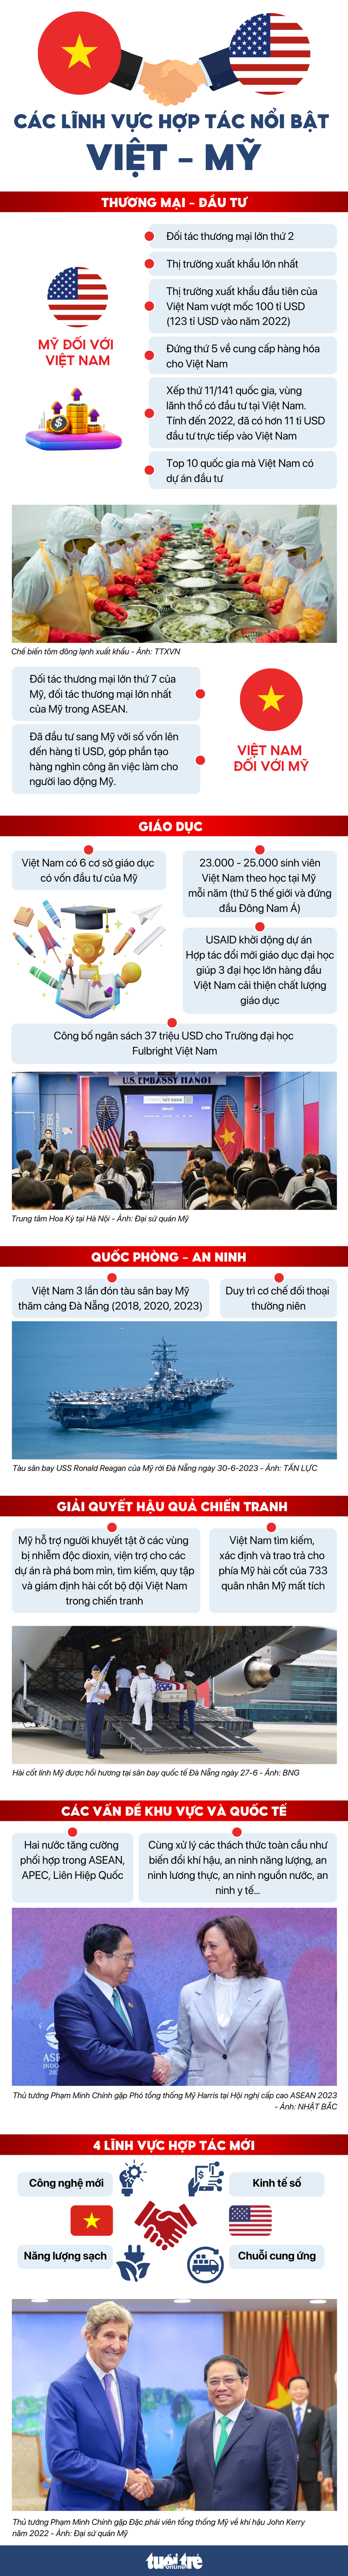 Những lĩnh vực hợp tác nổi bật trong quan hệ Việt - Mỹ - Đồ họa: MINH KHÔI - NGỌC THÀNH